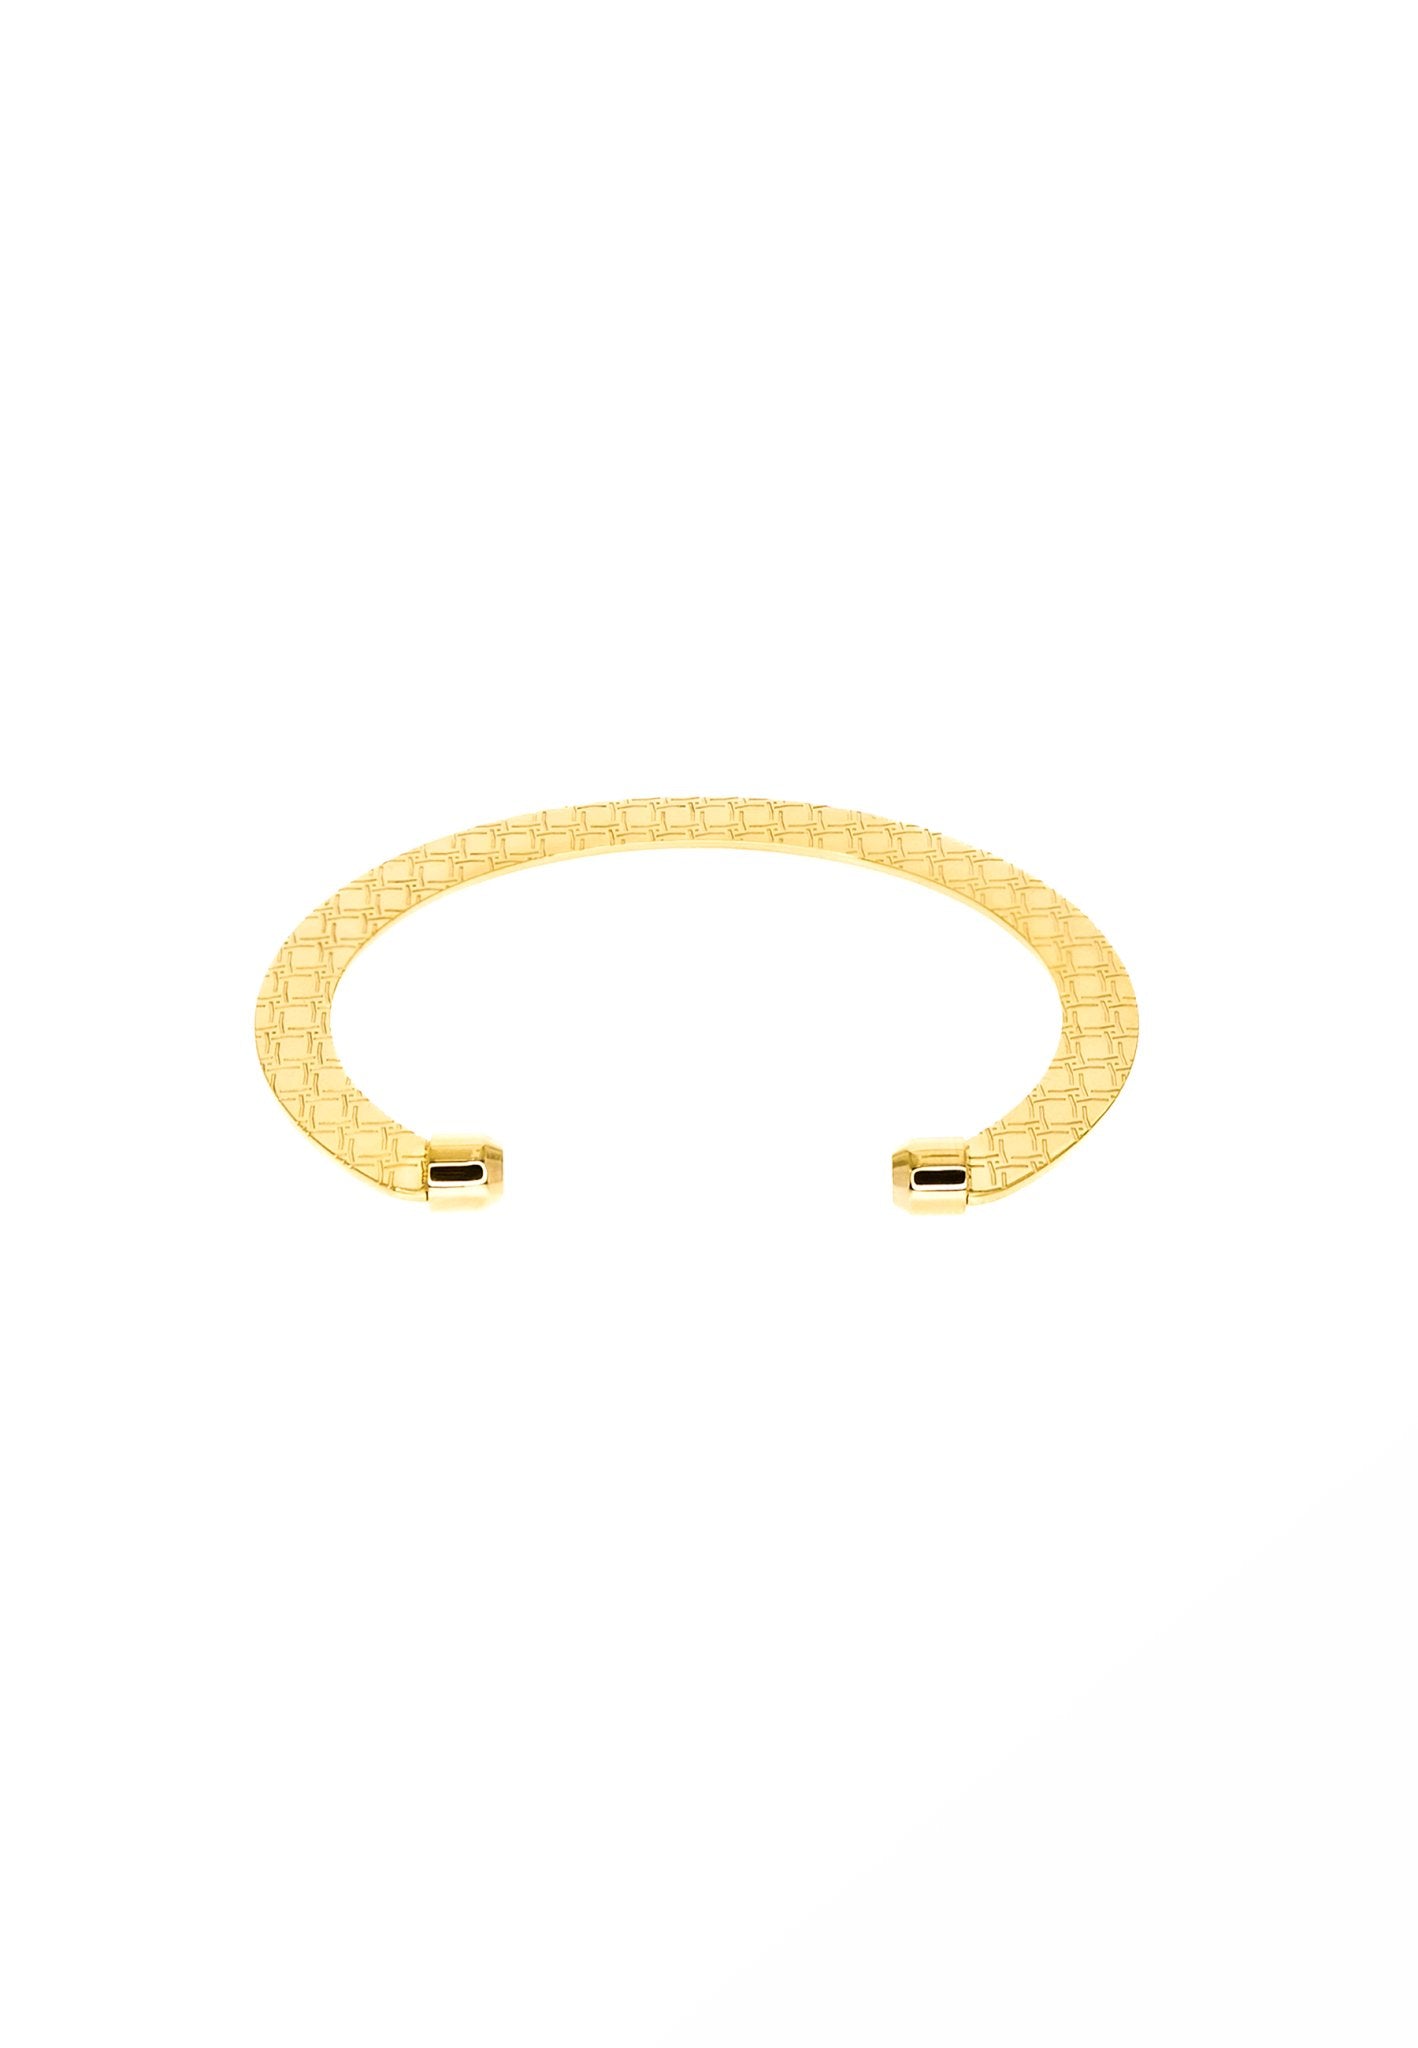 Open Cuff Bracelet "Equinox" - MYL BERLIN - 4260654113259 - 4260654113259